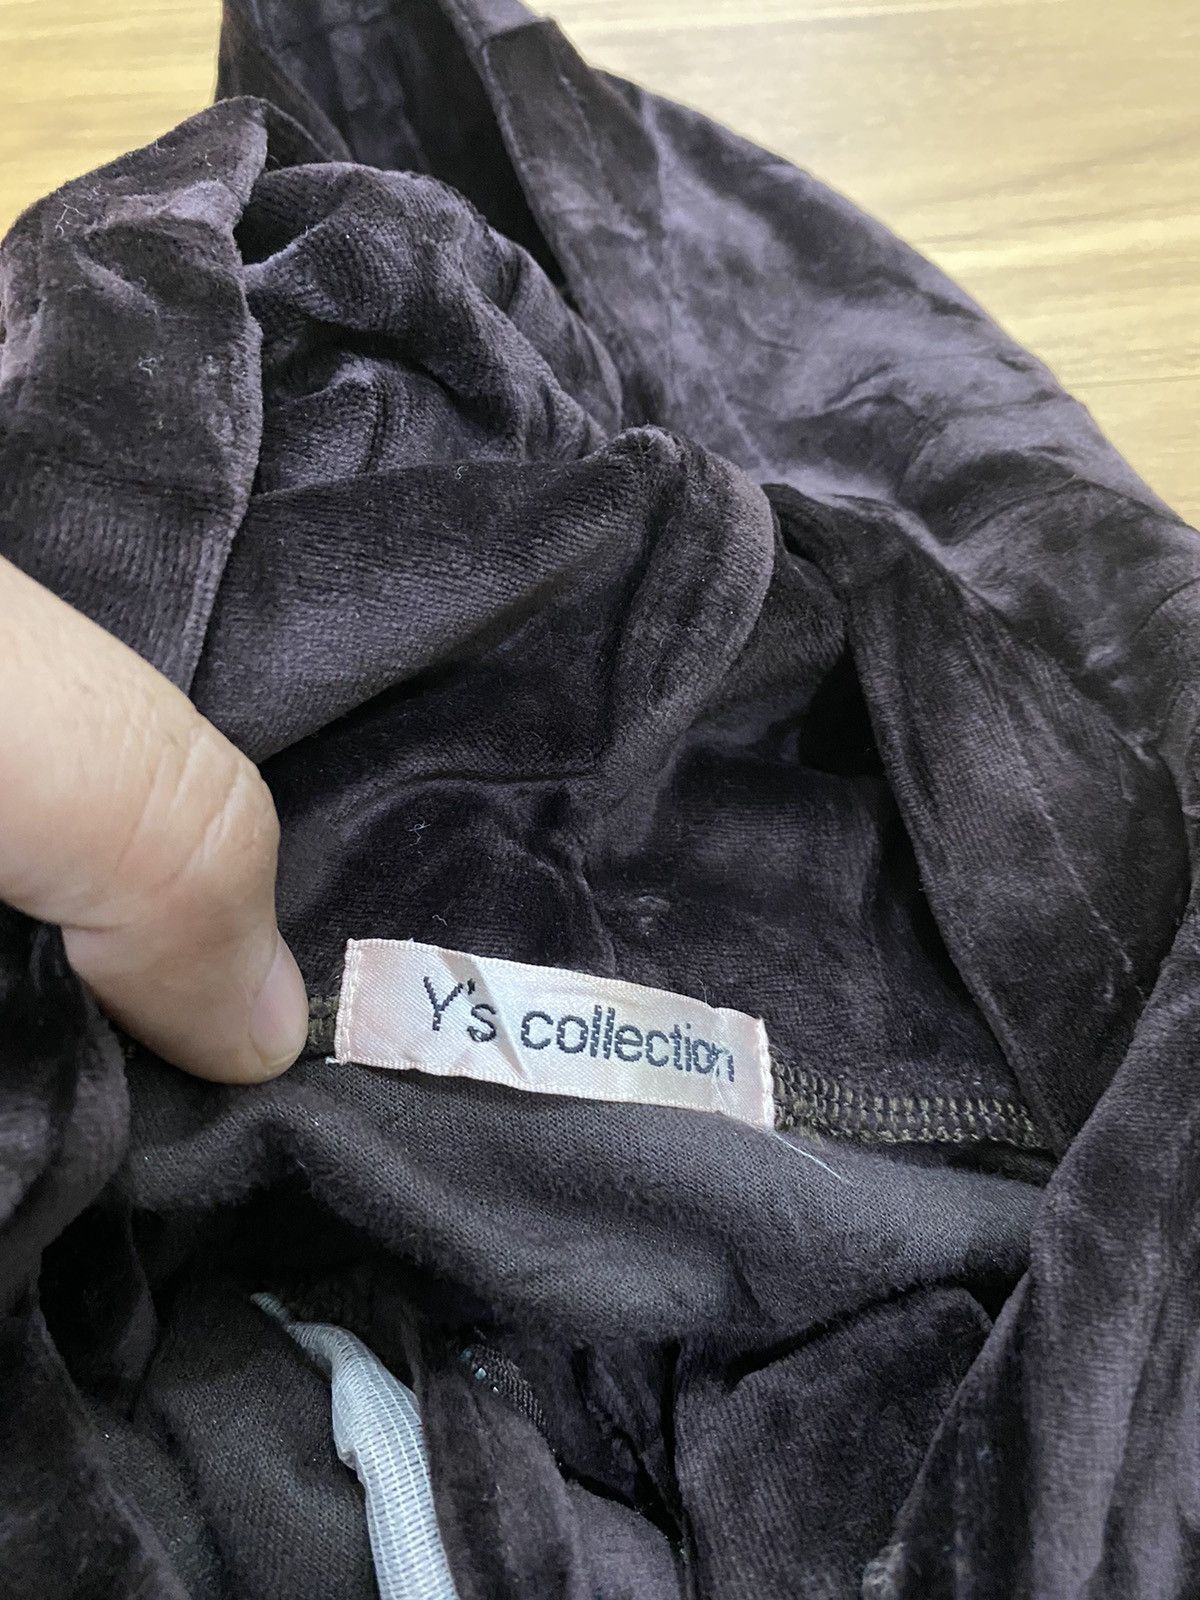 Yohji Yamamoto Y’s Collection Bondage Pocket Vest Hoodie - 4